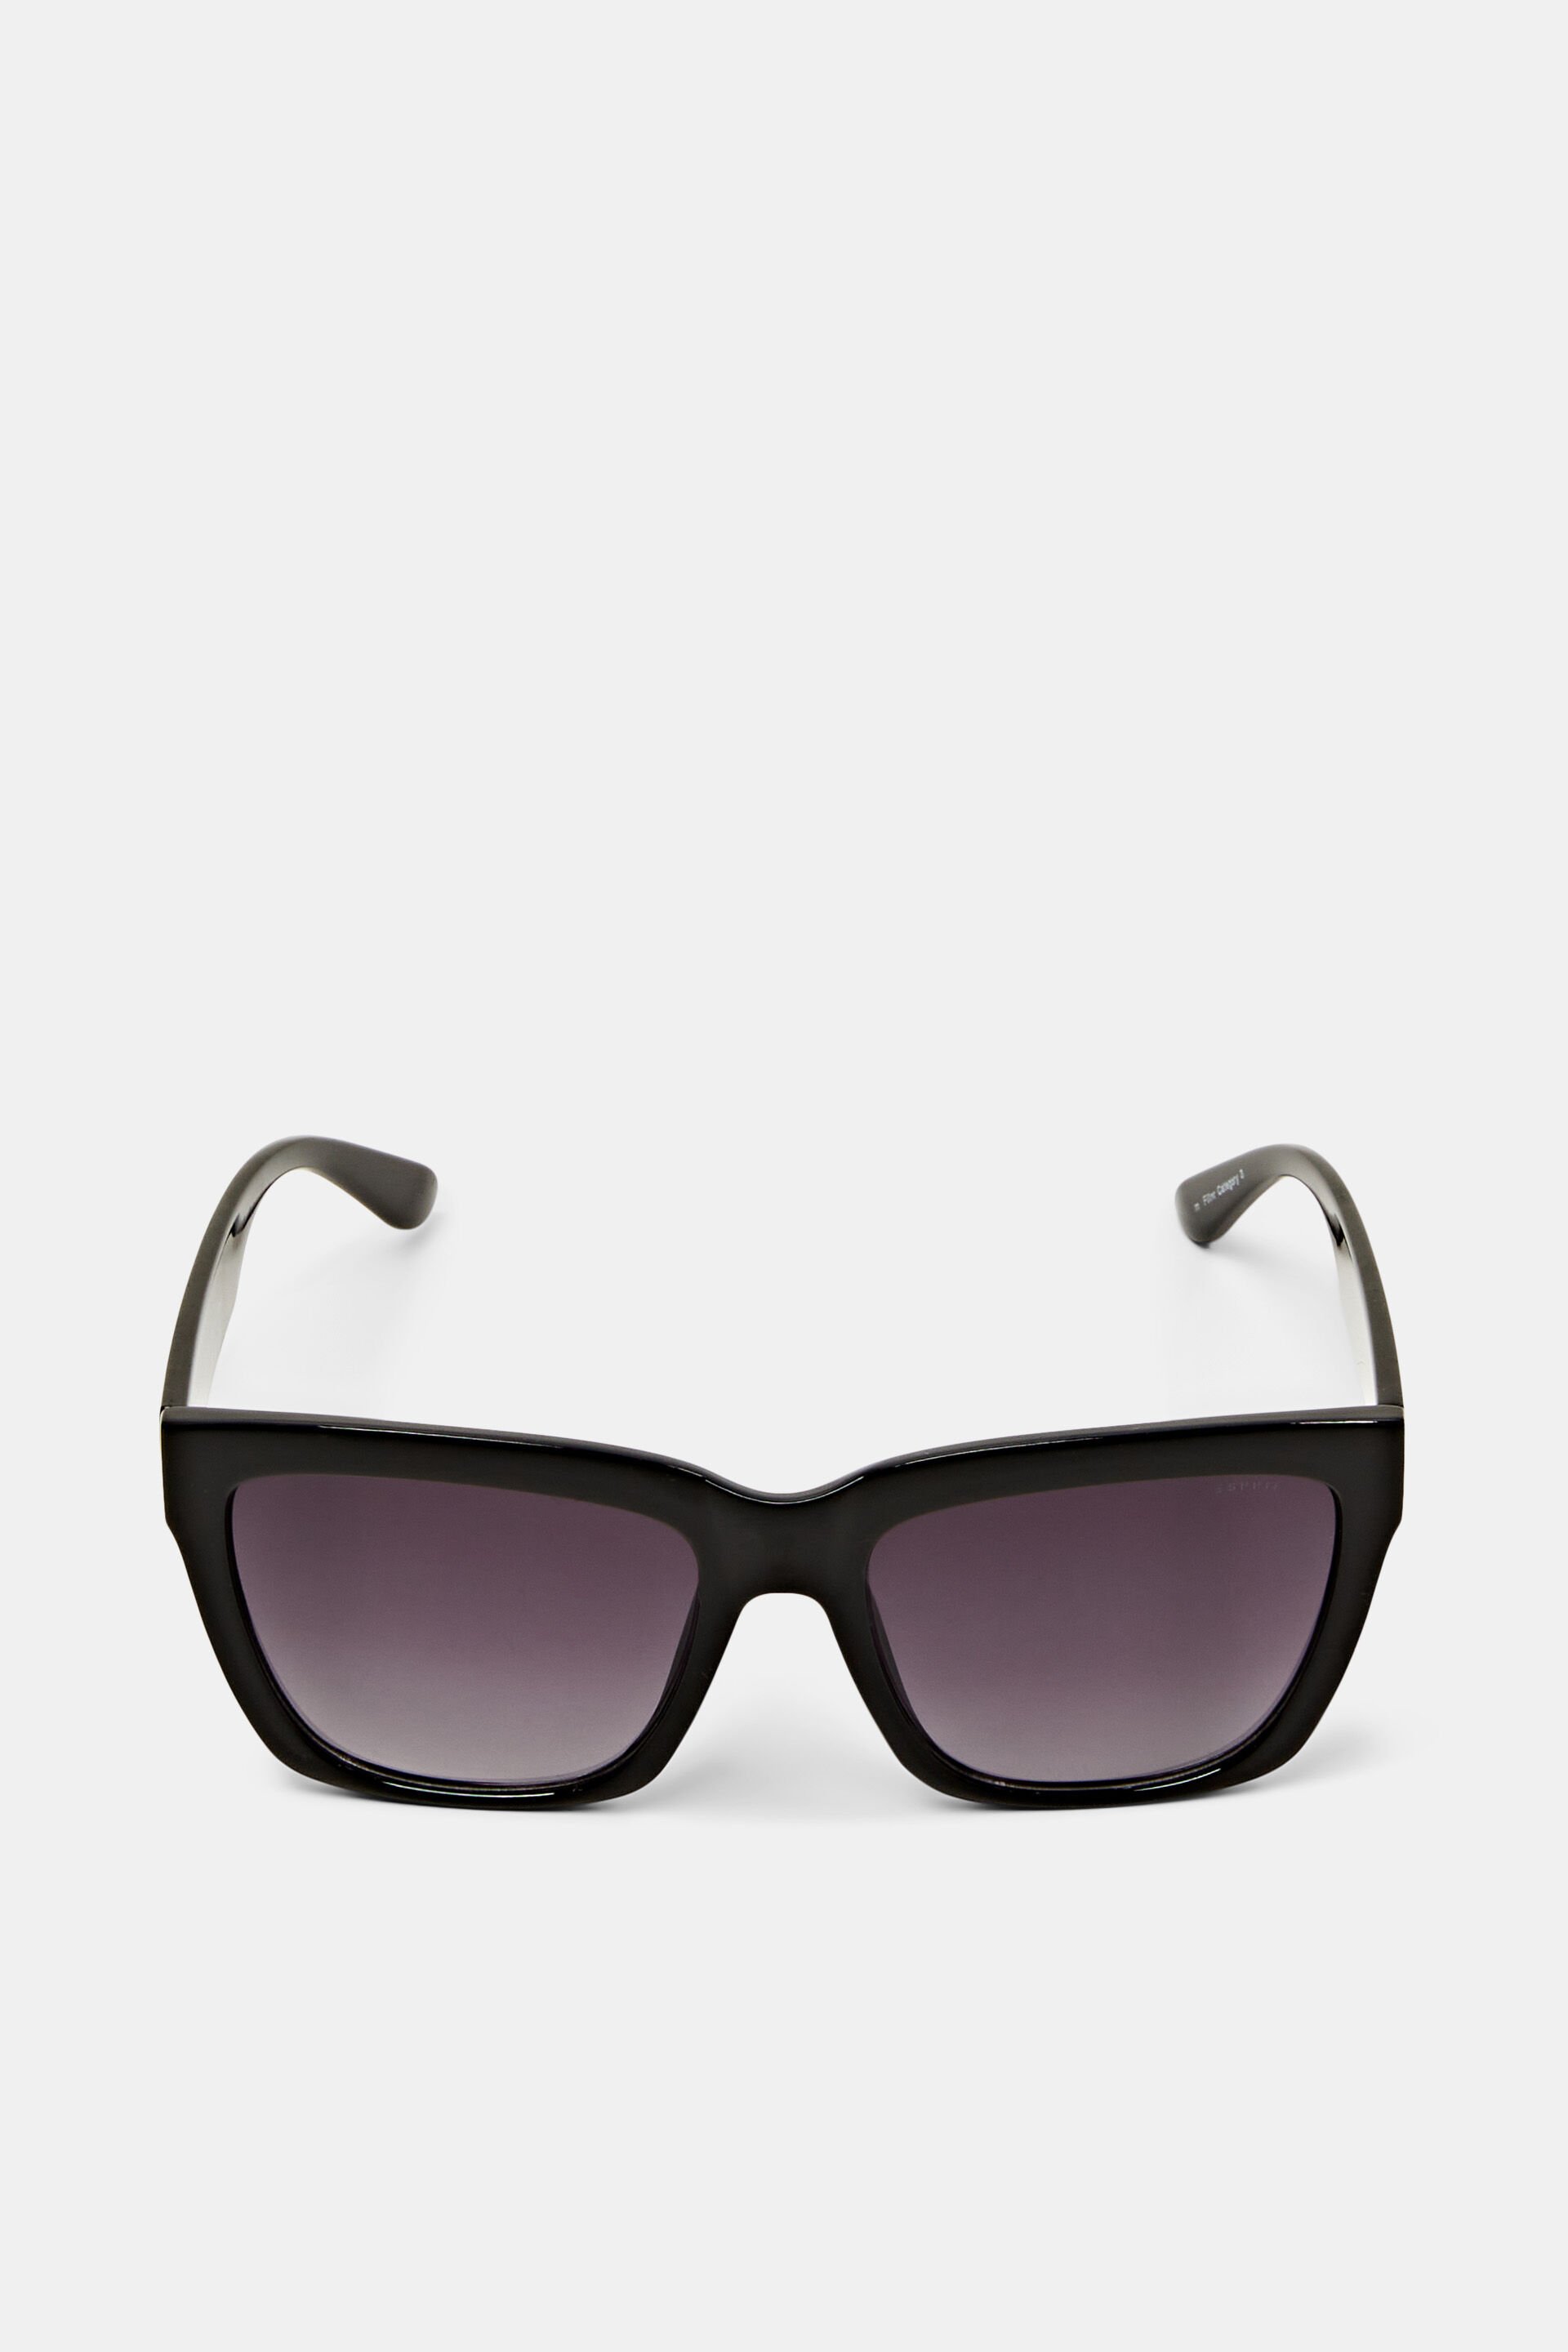 Esprit frame sunglasses Bulky